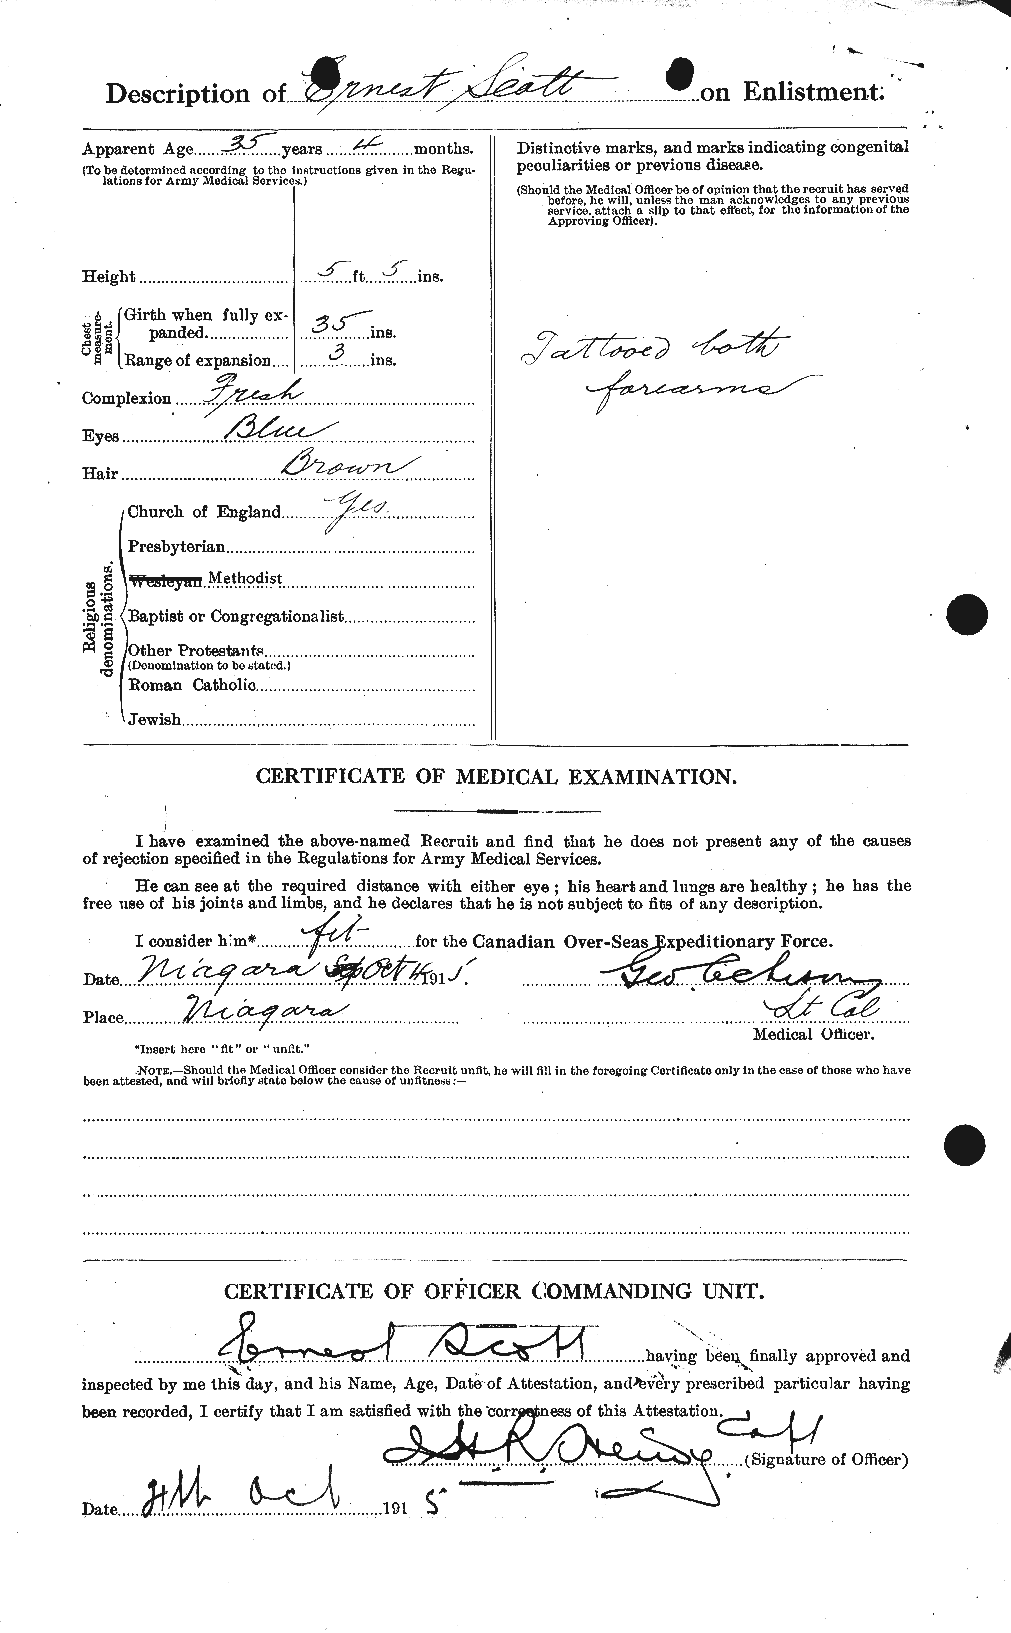 Dossiers du Personnel de la Première Guerre mondiale - CEC 085017b